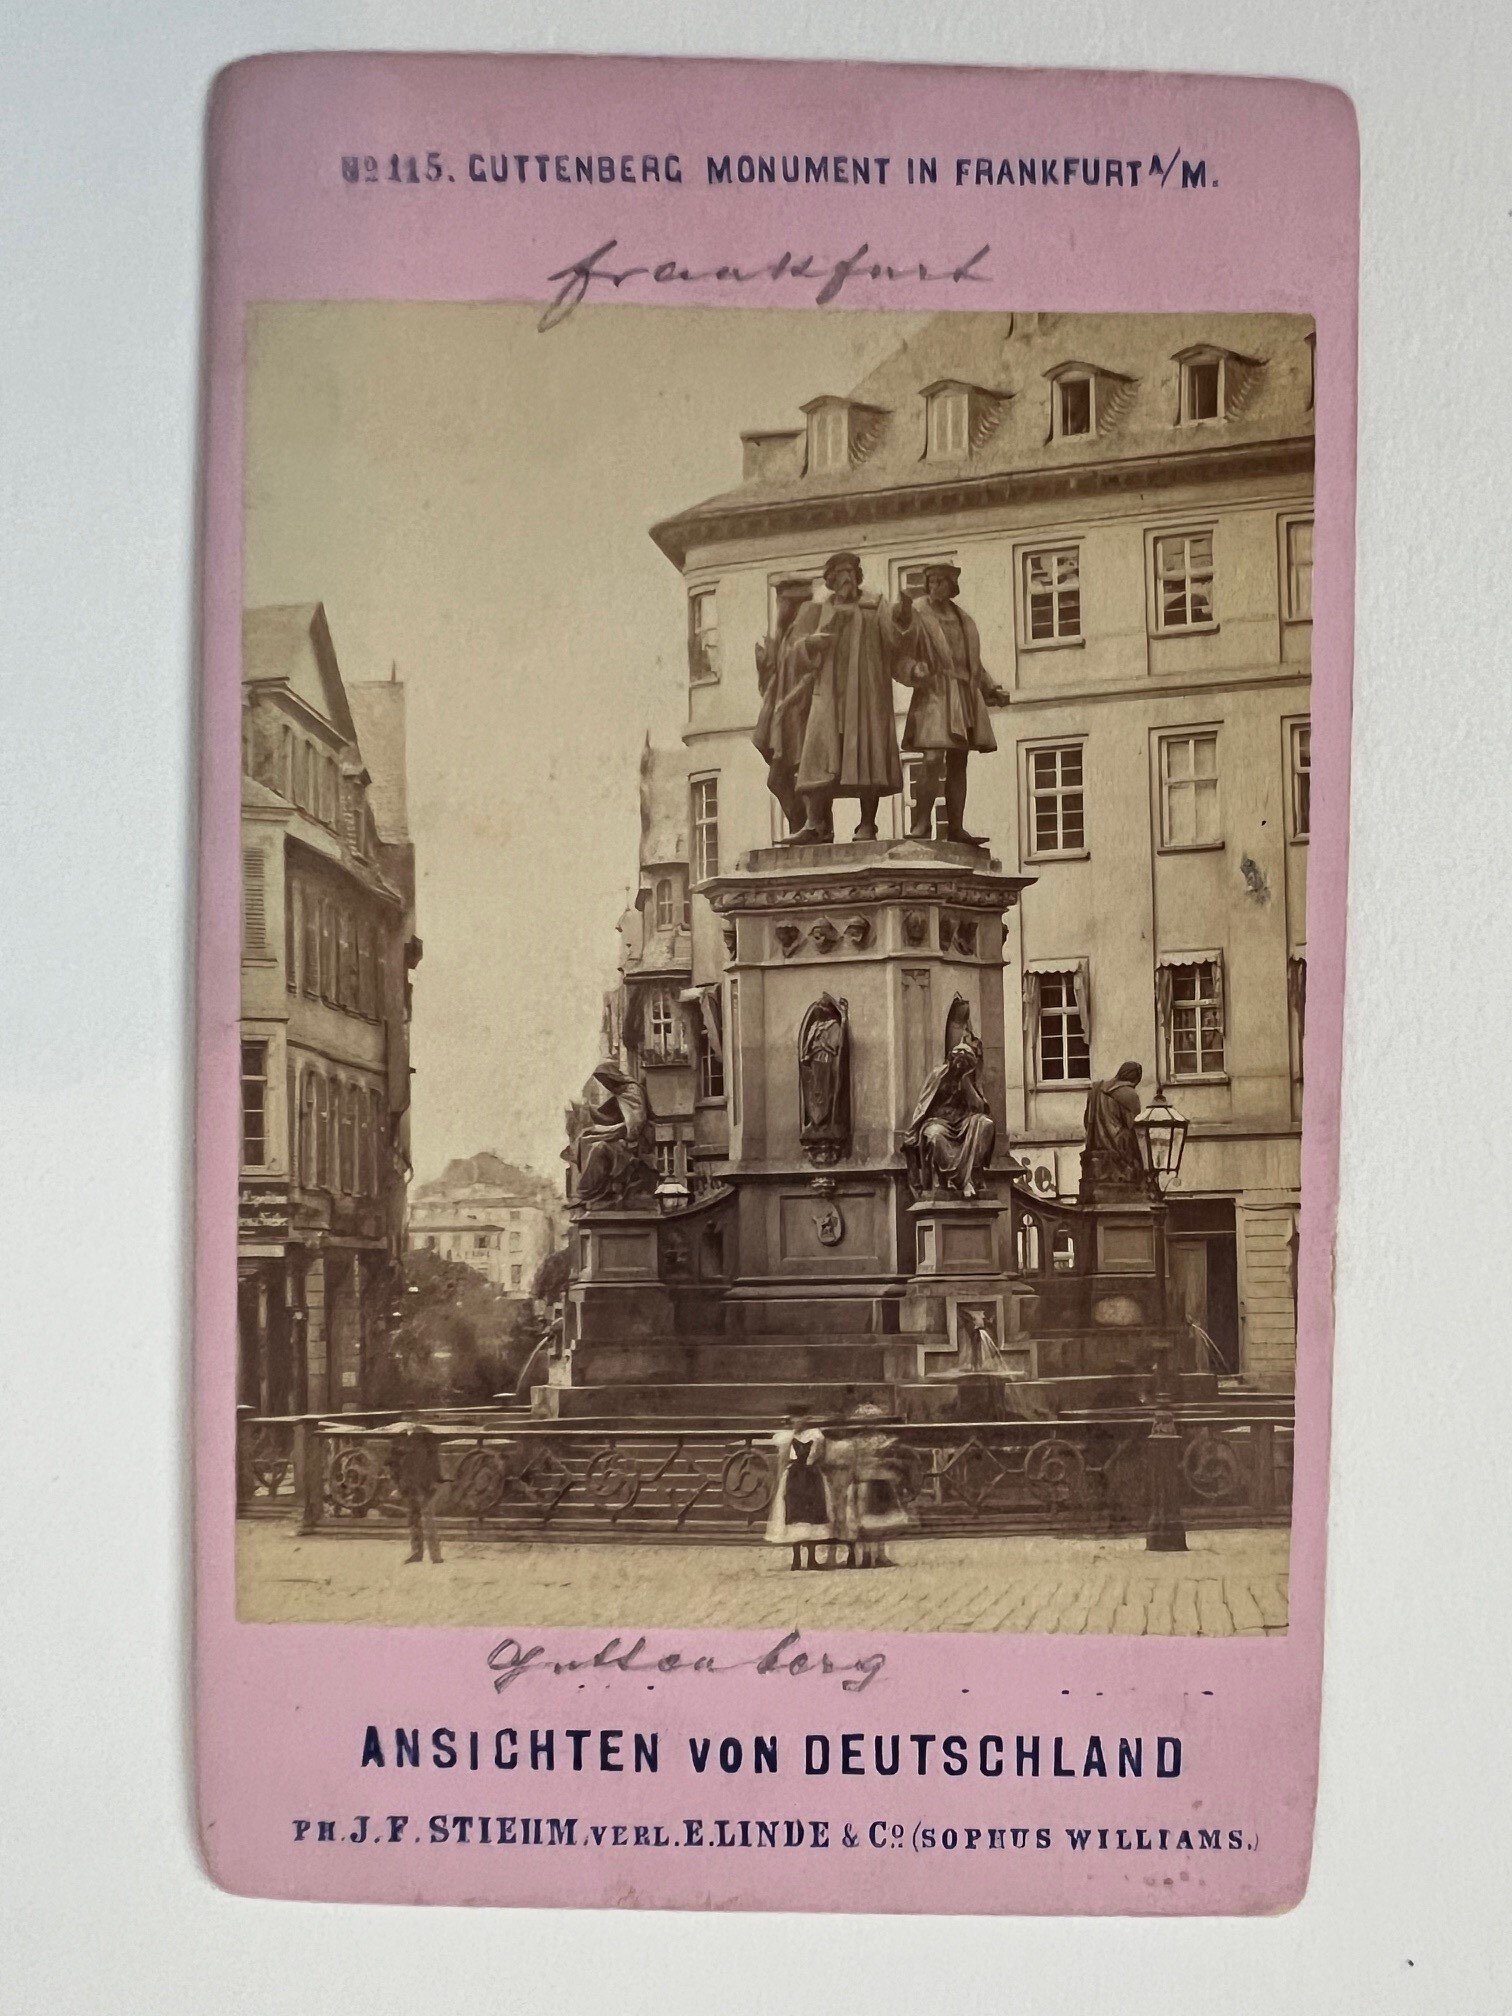 CdV, Johann Friedrich Stiehm, Frankfurt, Nr. 115, Guttenberg Monument ca. 1881. (Taunus-Rhein-Main - Regionalgeschichtliche Sammlung Dr. Stefan Naas CC BY-NC-SA)